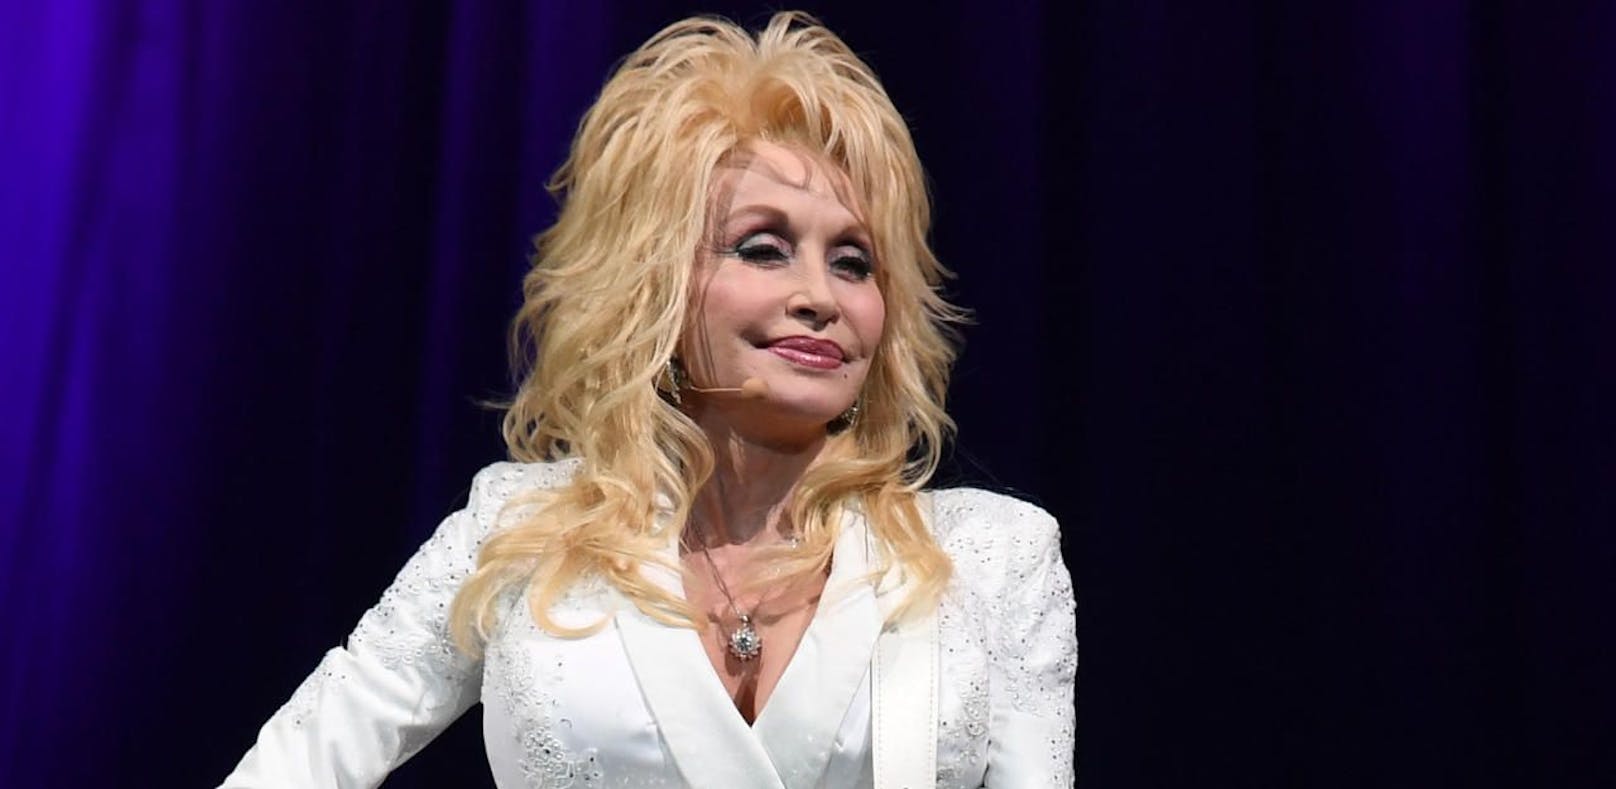 Buch enthüllt: Dolly Parton wollte Suizid begehen